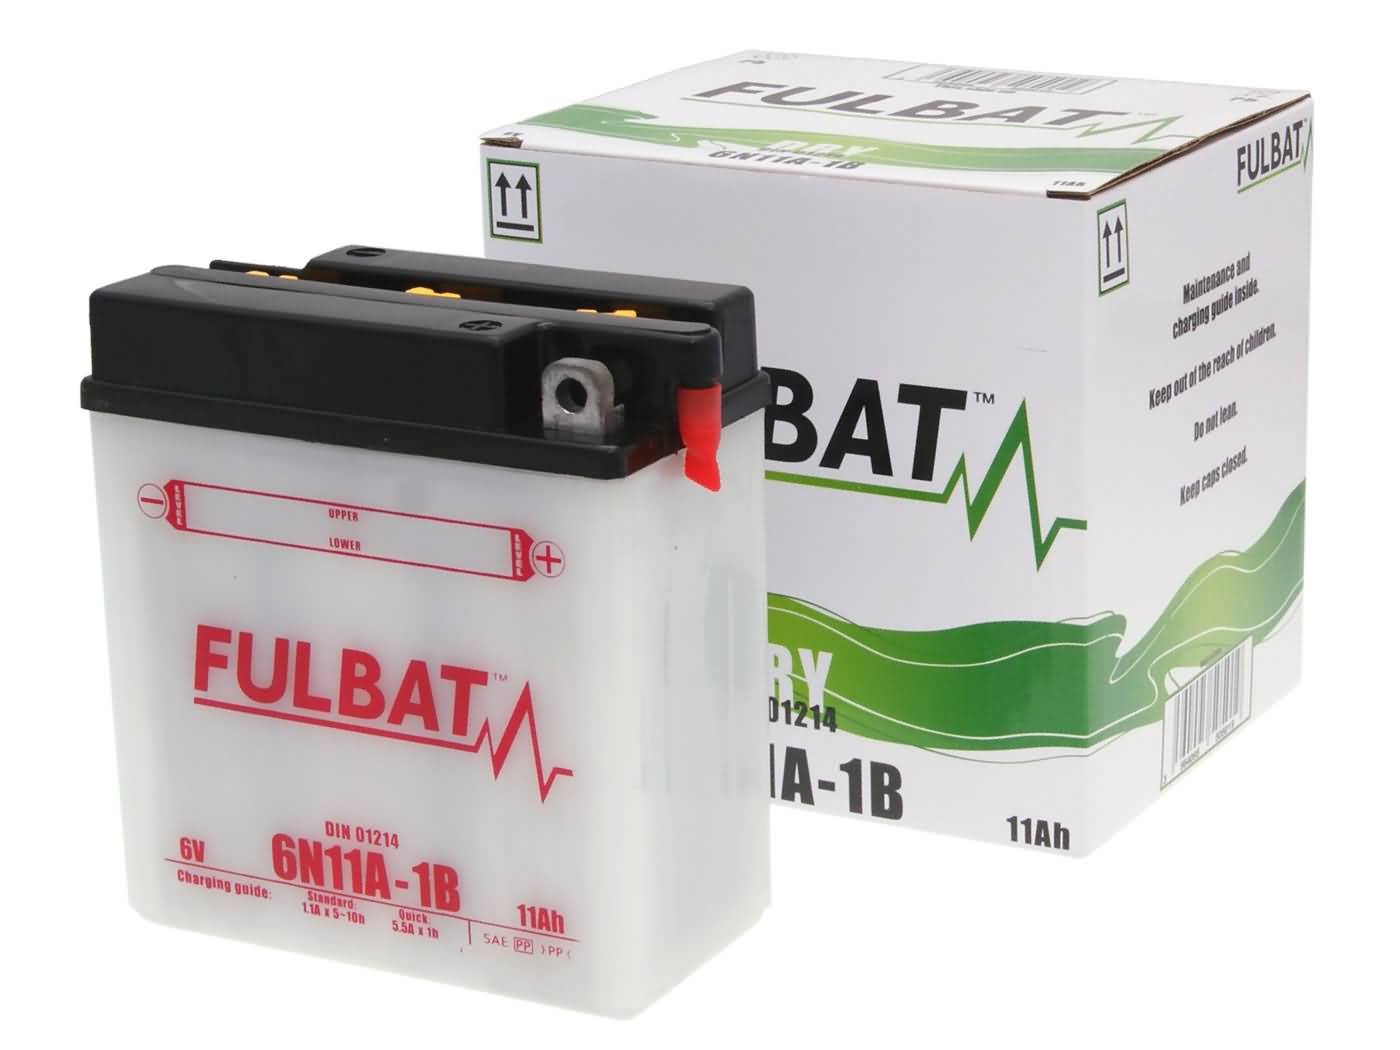 Fulbat 6V 6N11A-1B DRY Batterie